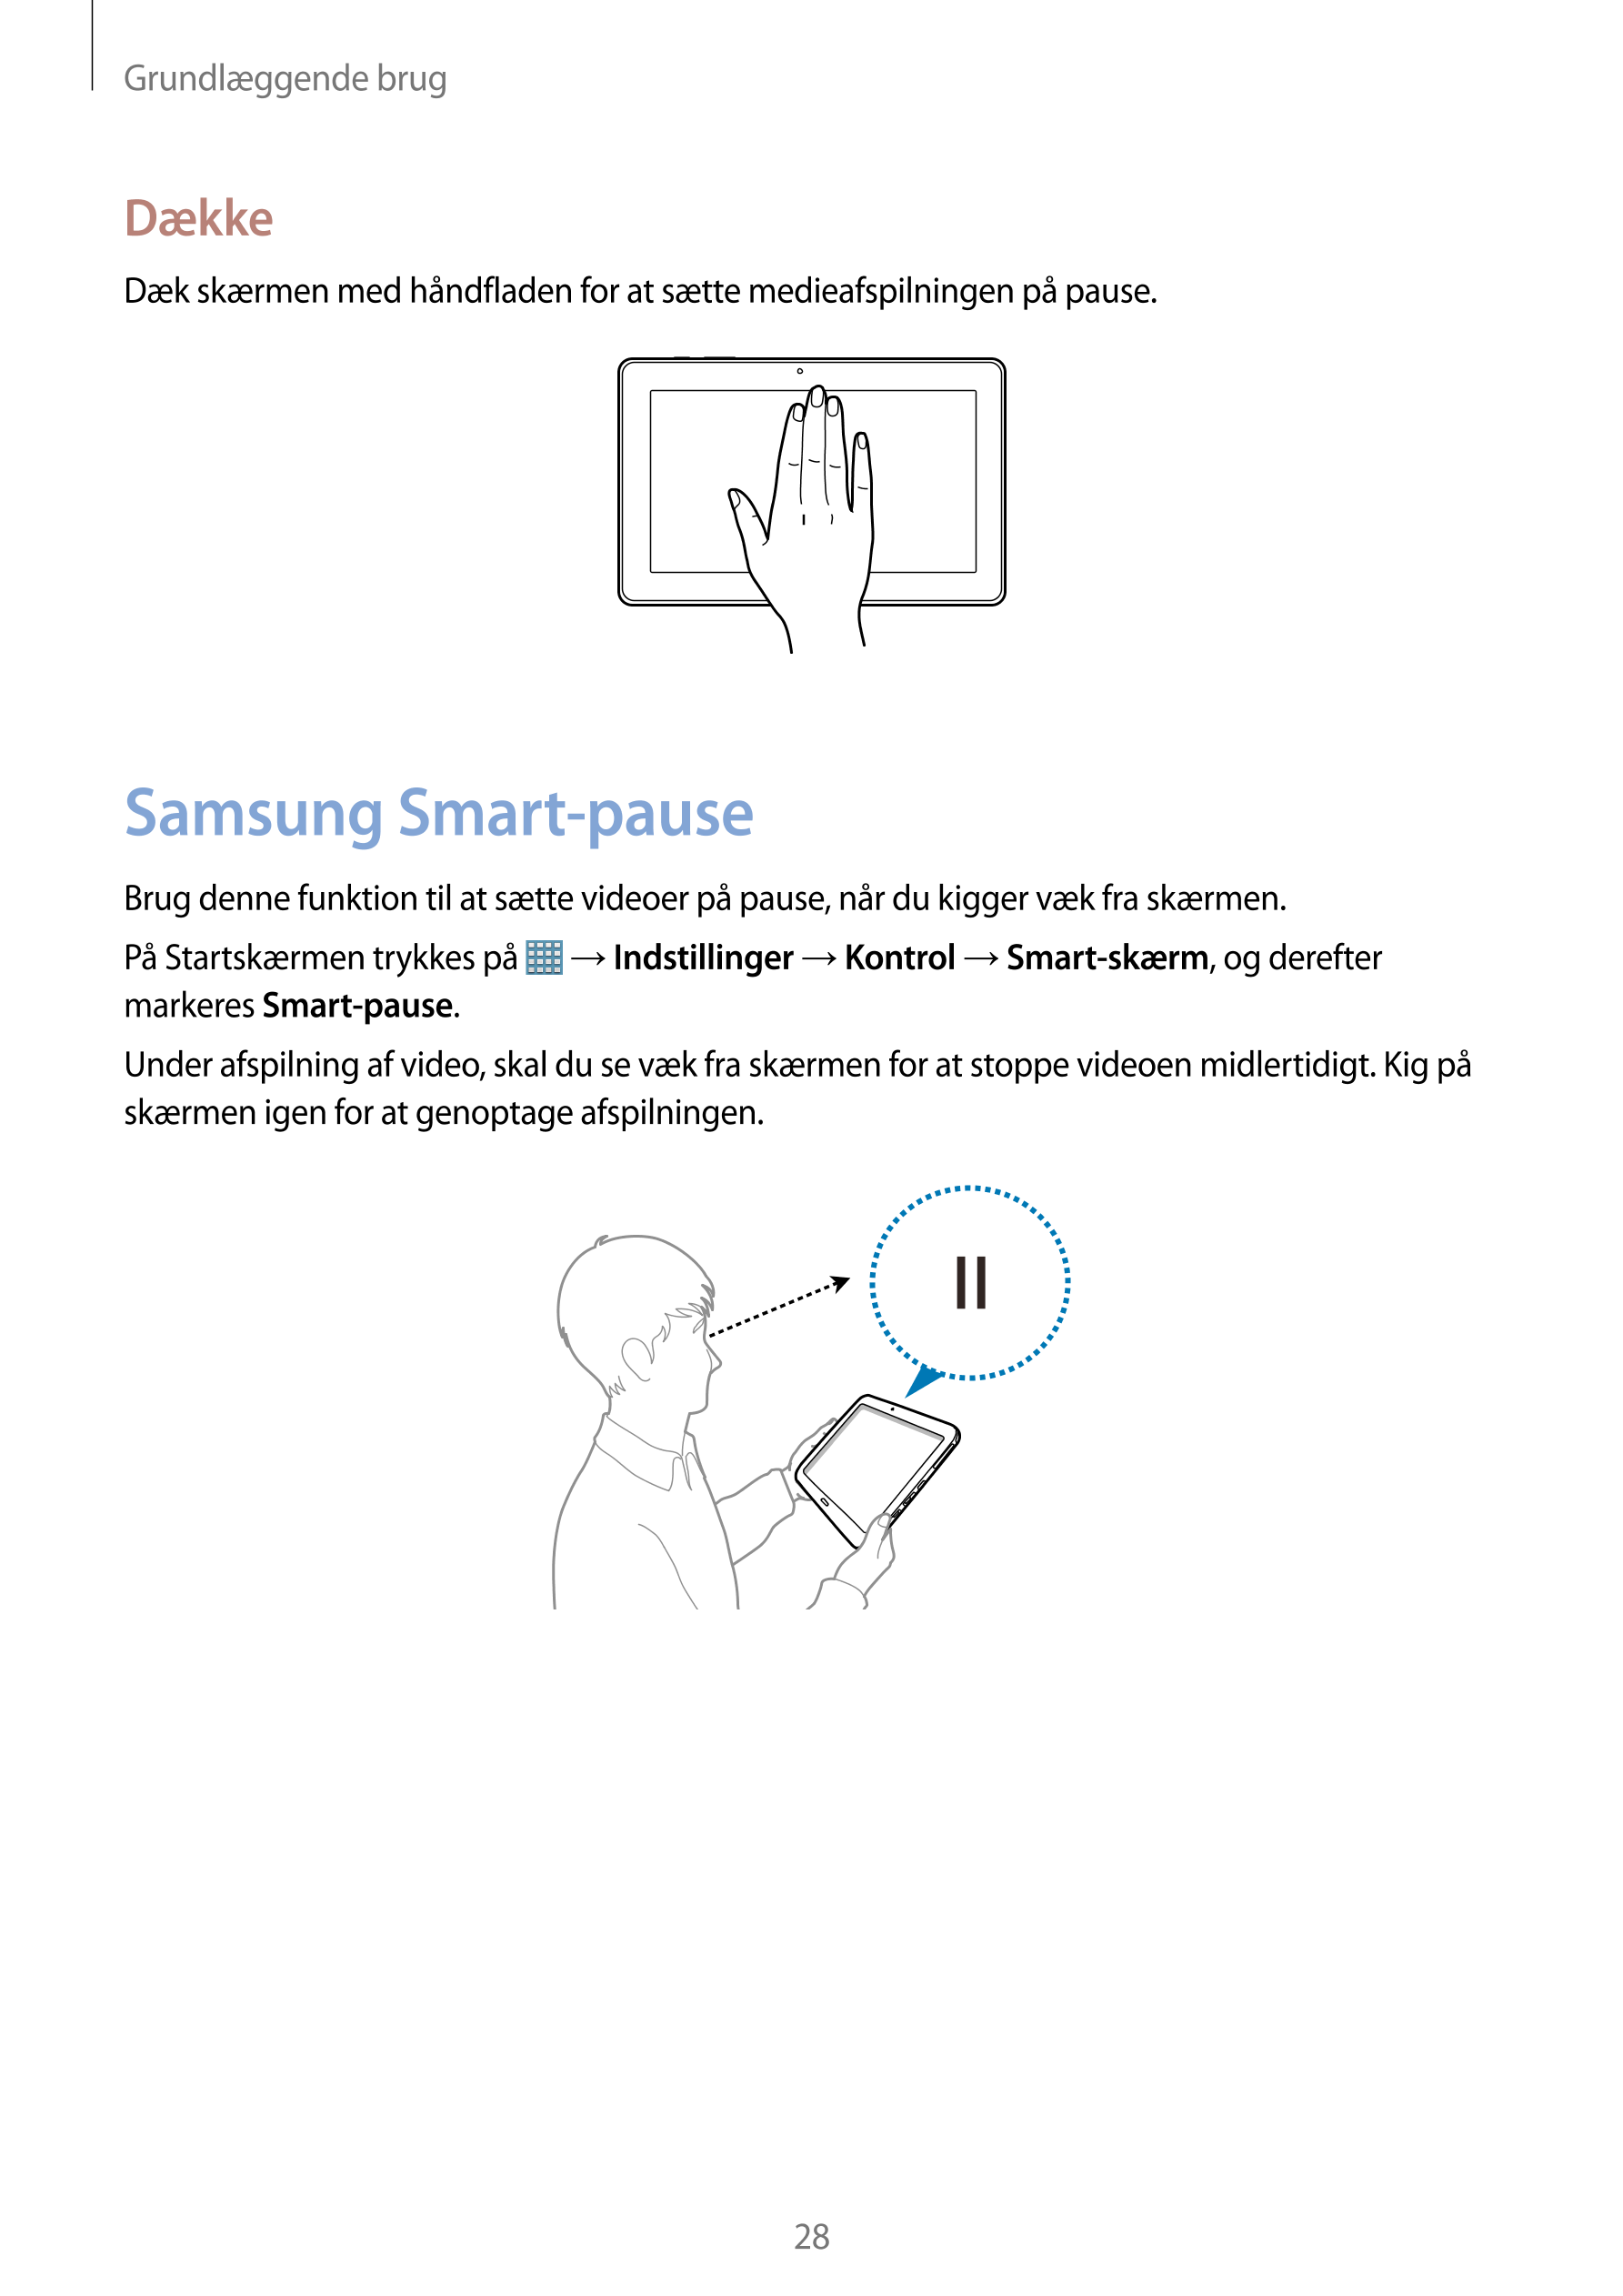 Grundlæggende brug
Dække
Dæk skærmen med håndfladen for at sætte medieafspilningen på pause.
Samsung Smart-pause
Brug denne funk